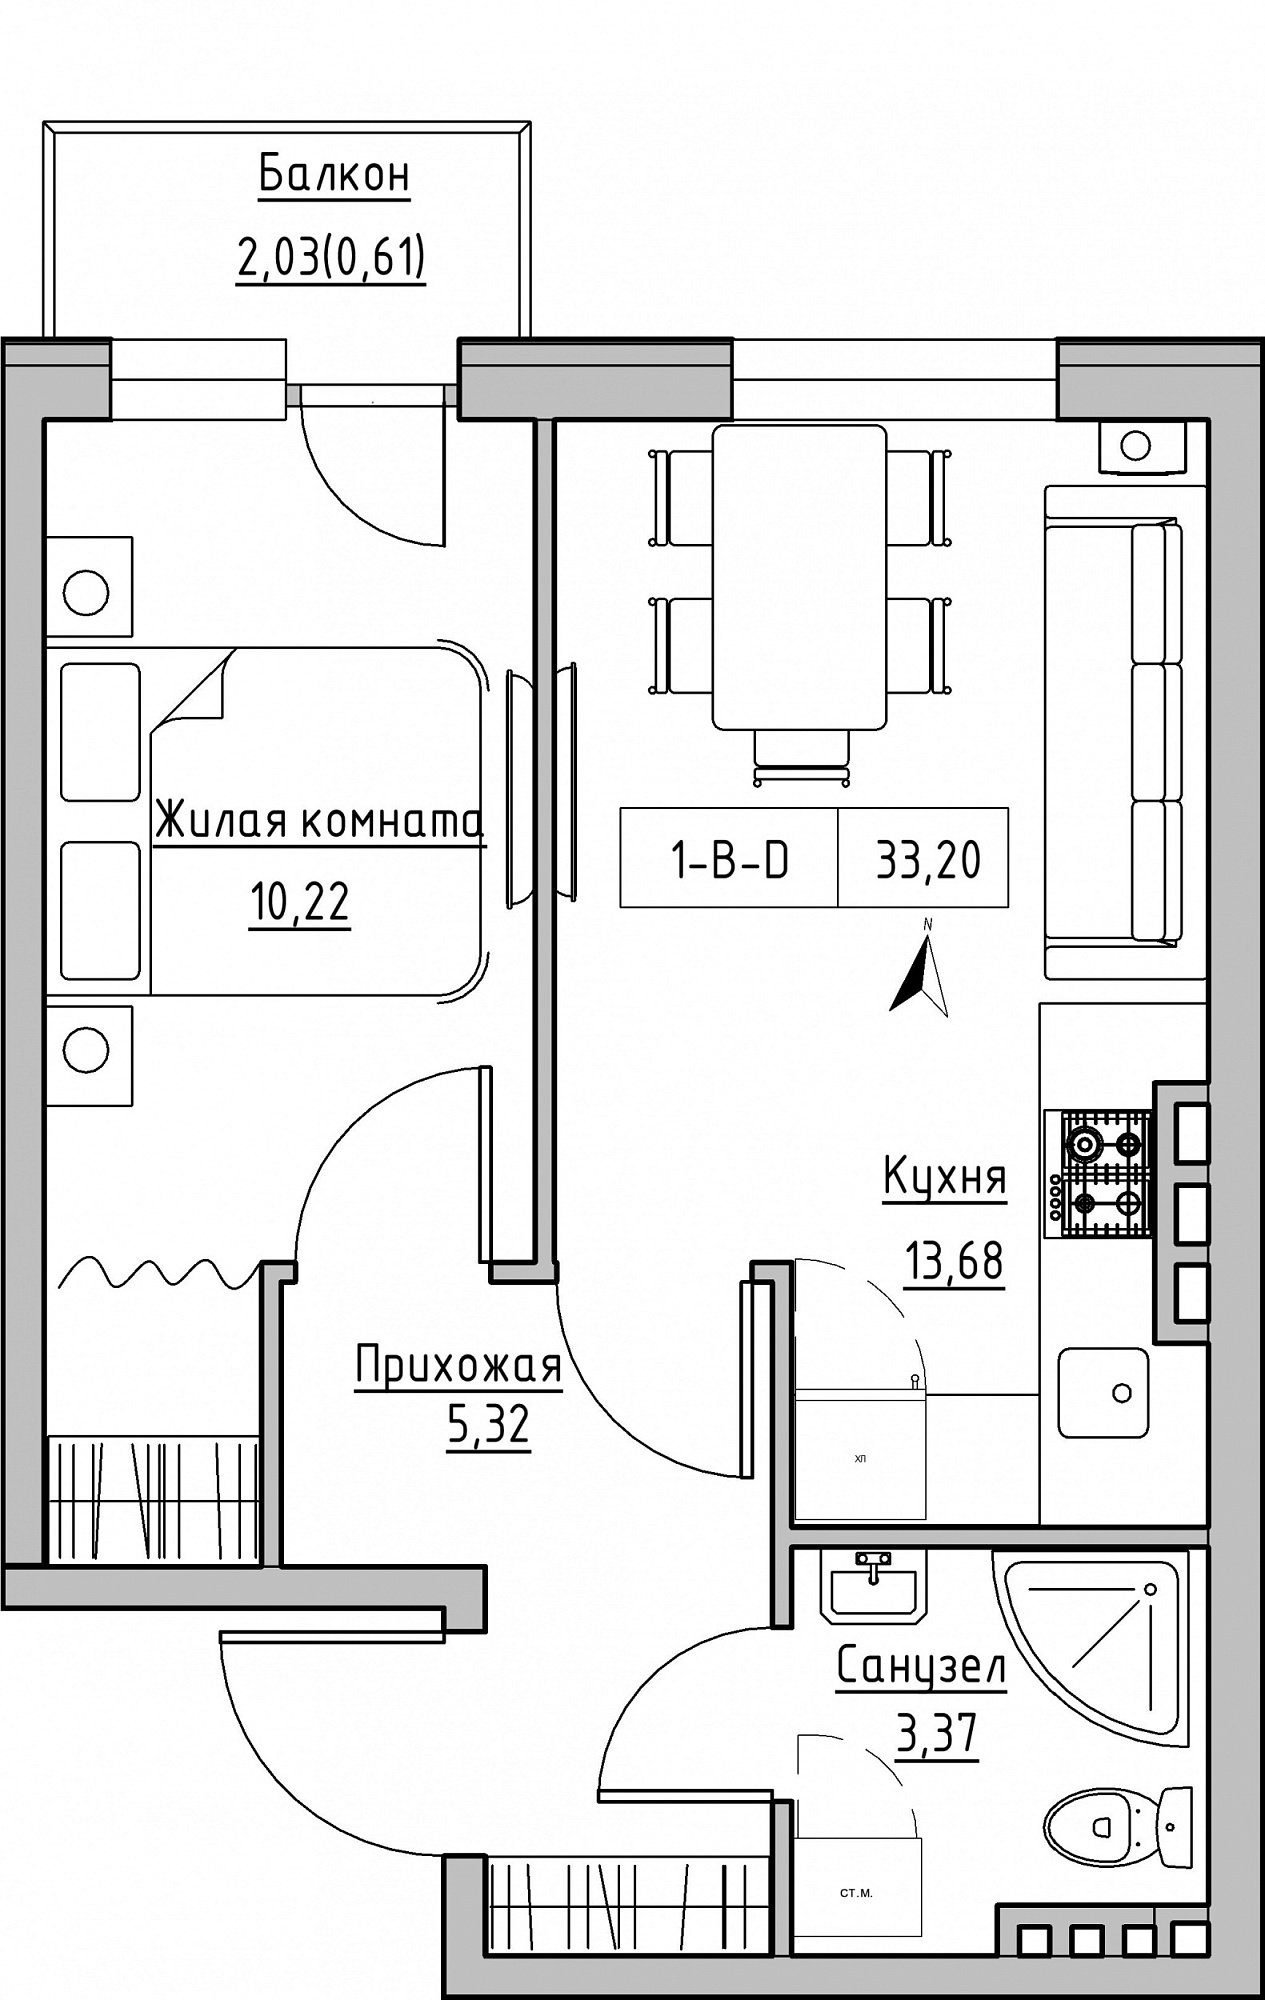 Планування 1-к квартира площею 33.2м2, KS-024-05/0003.